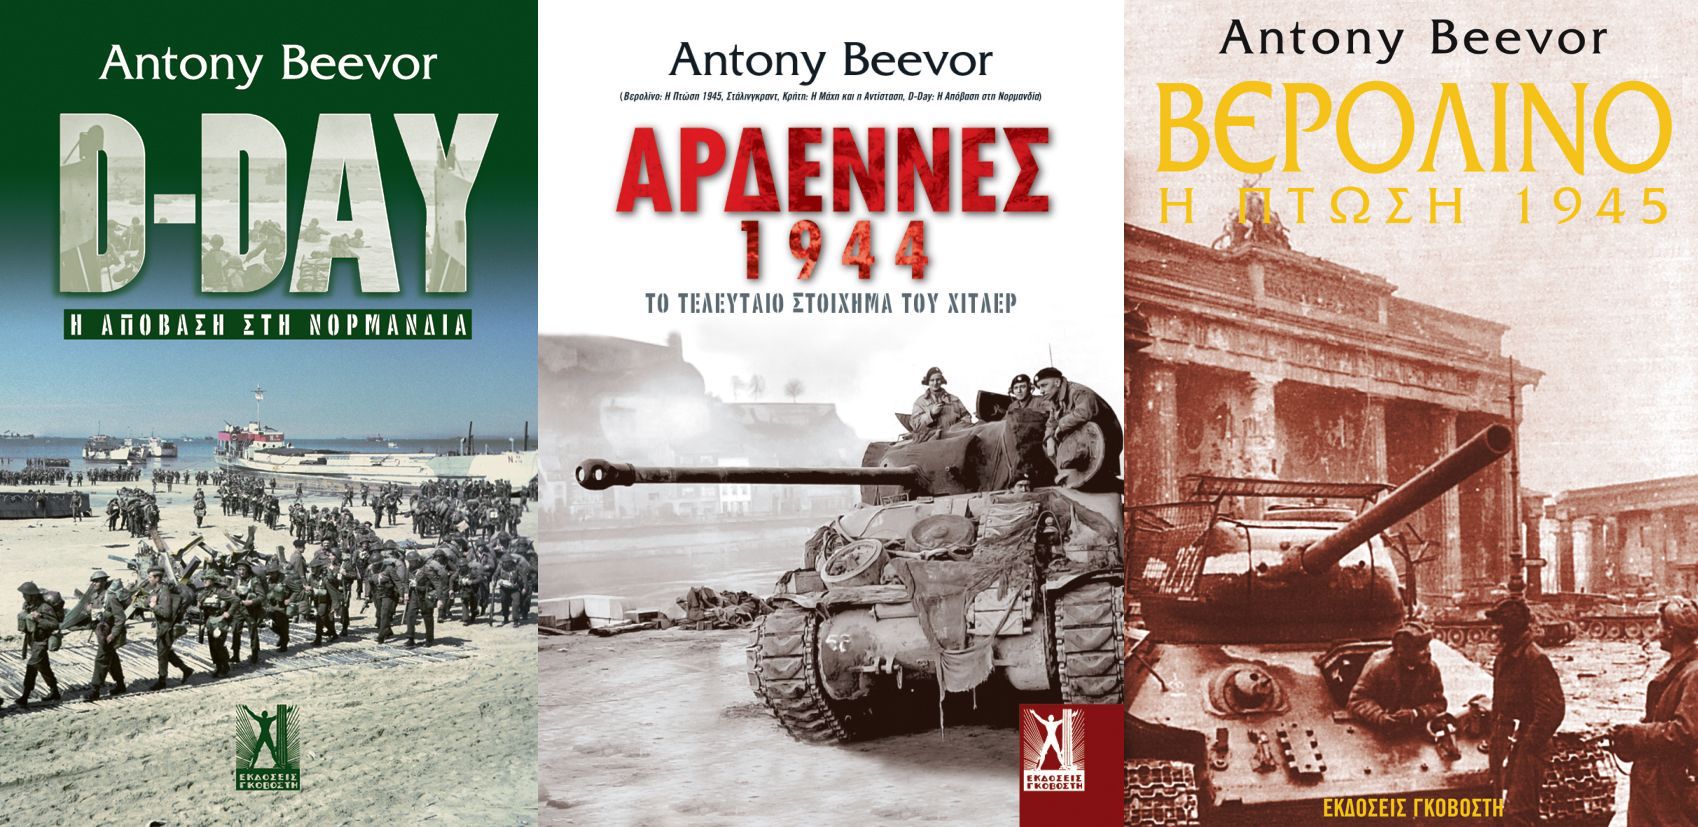 Antony Beevor: «Αρδέννες 1944. Το τελευταίο στοίχημα του Χίτλερ»